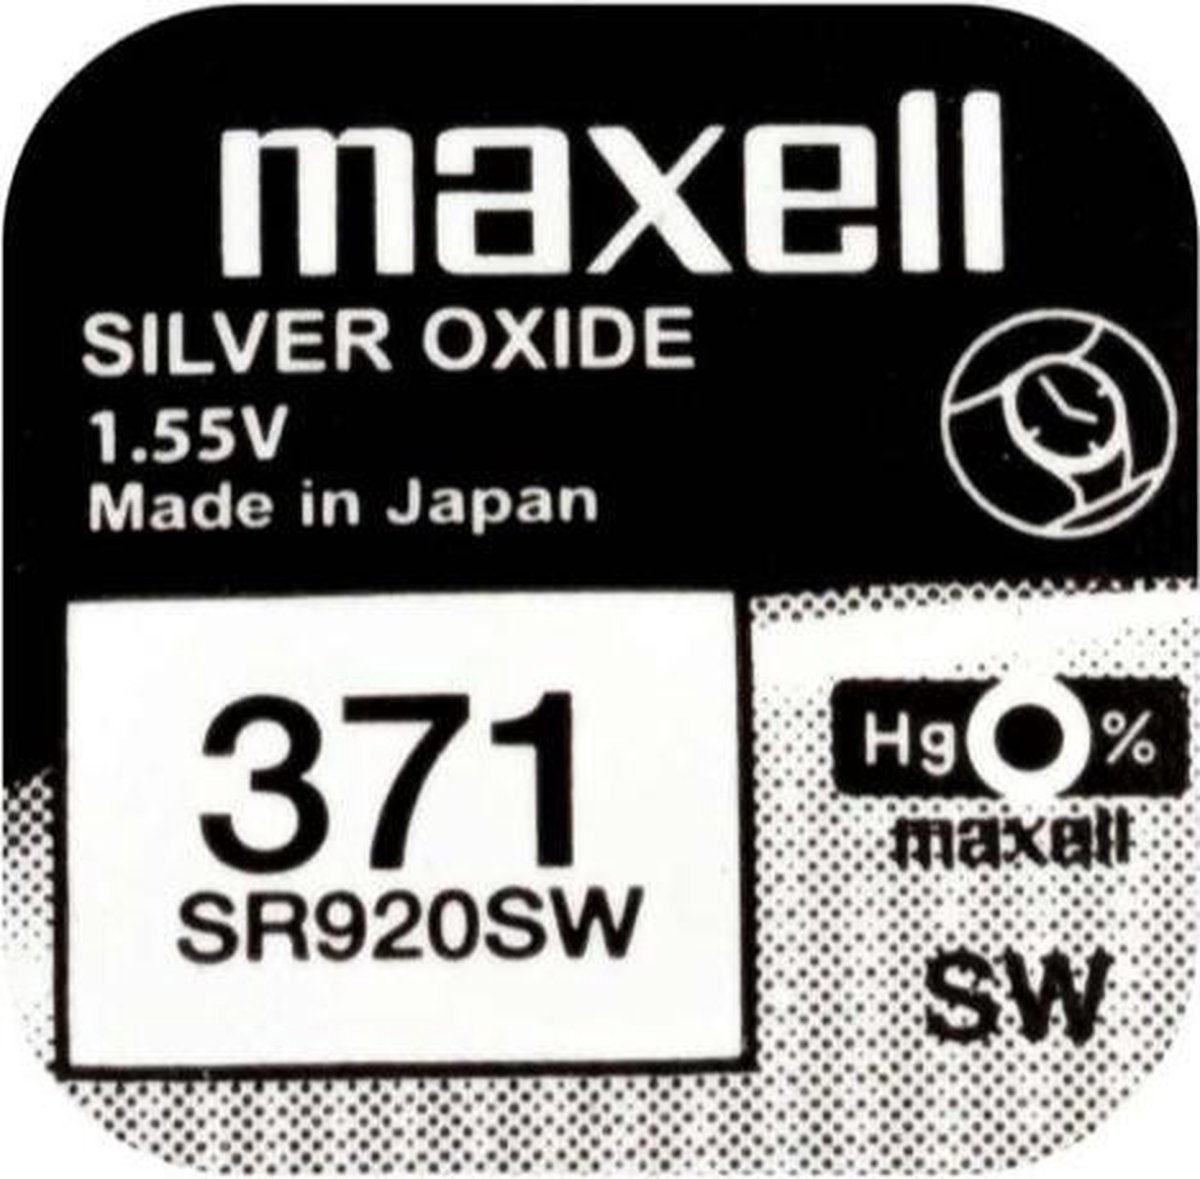 Maxwell 371 / SR920SW  zilveroxide knoopcel horlogebatterij 1 (een) stuks - Maxell